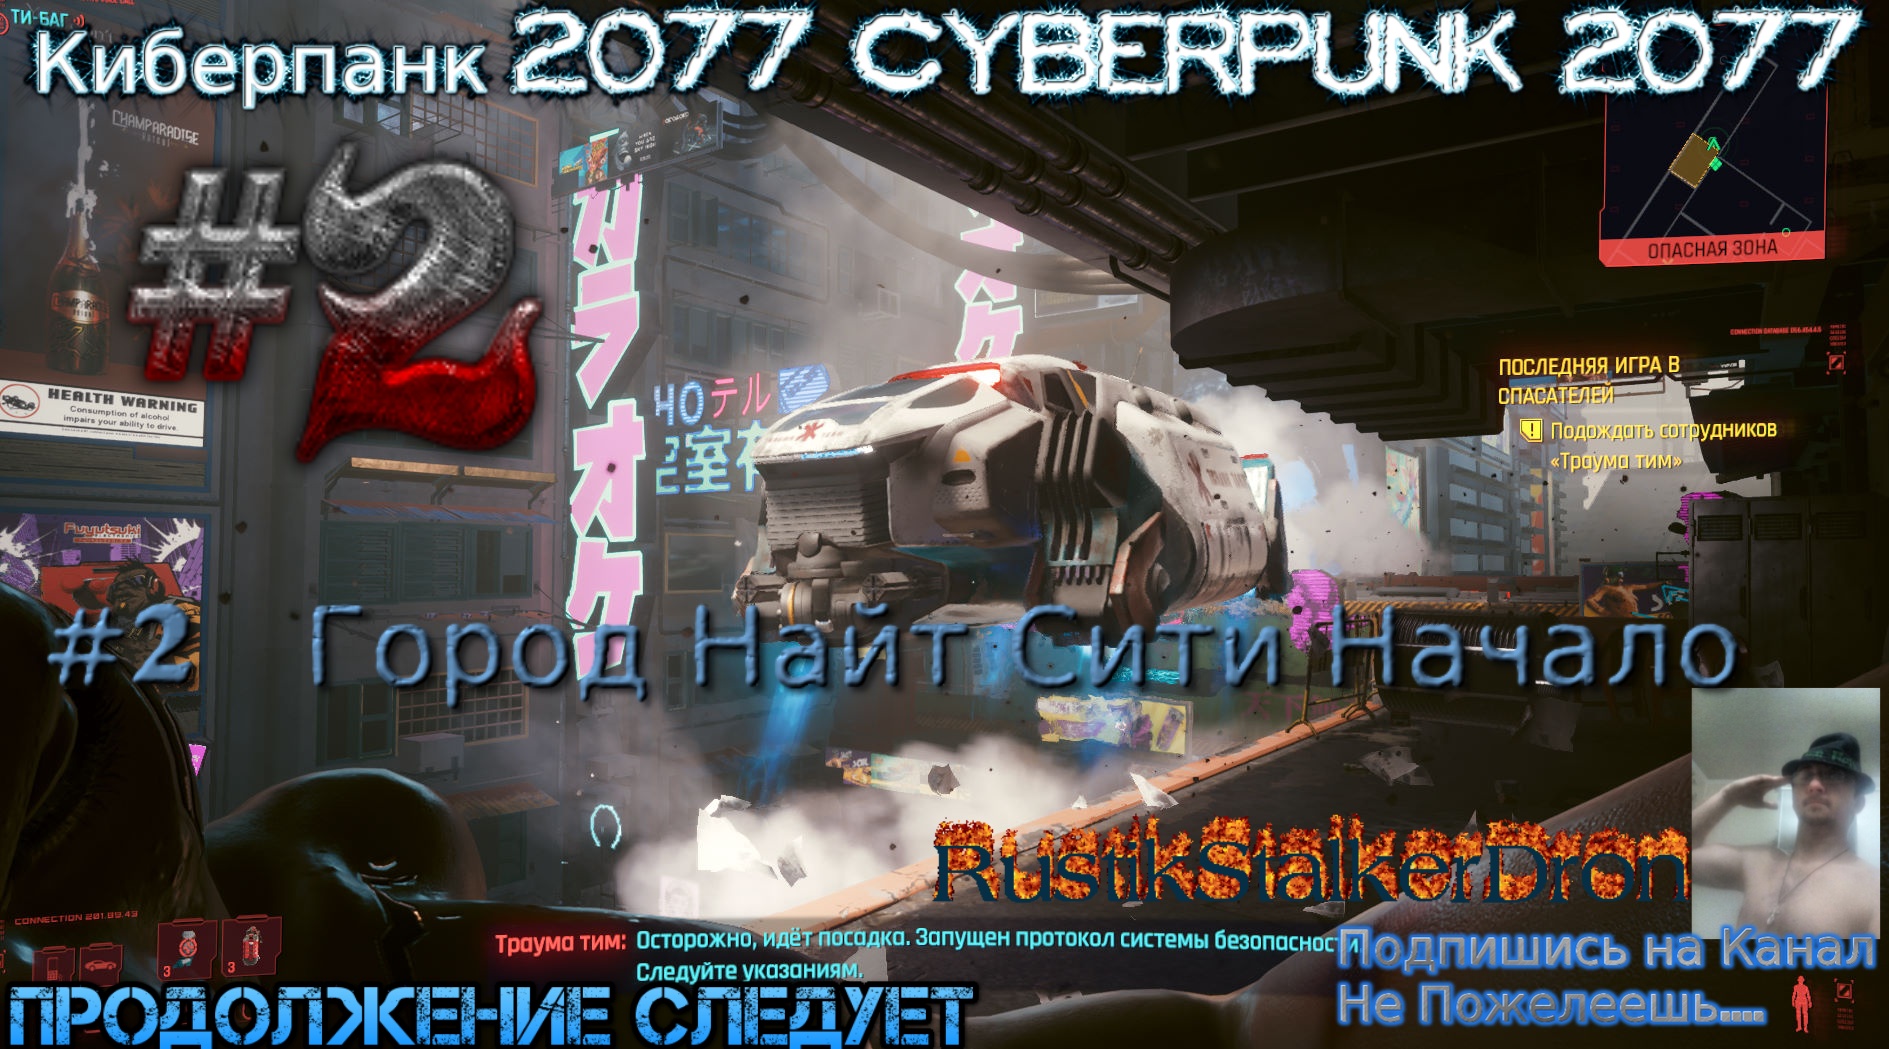 Bomb rush cyberpunk прохождение фото 81